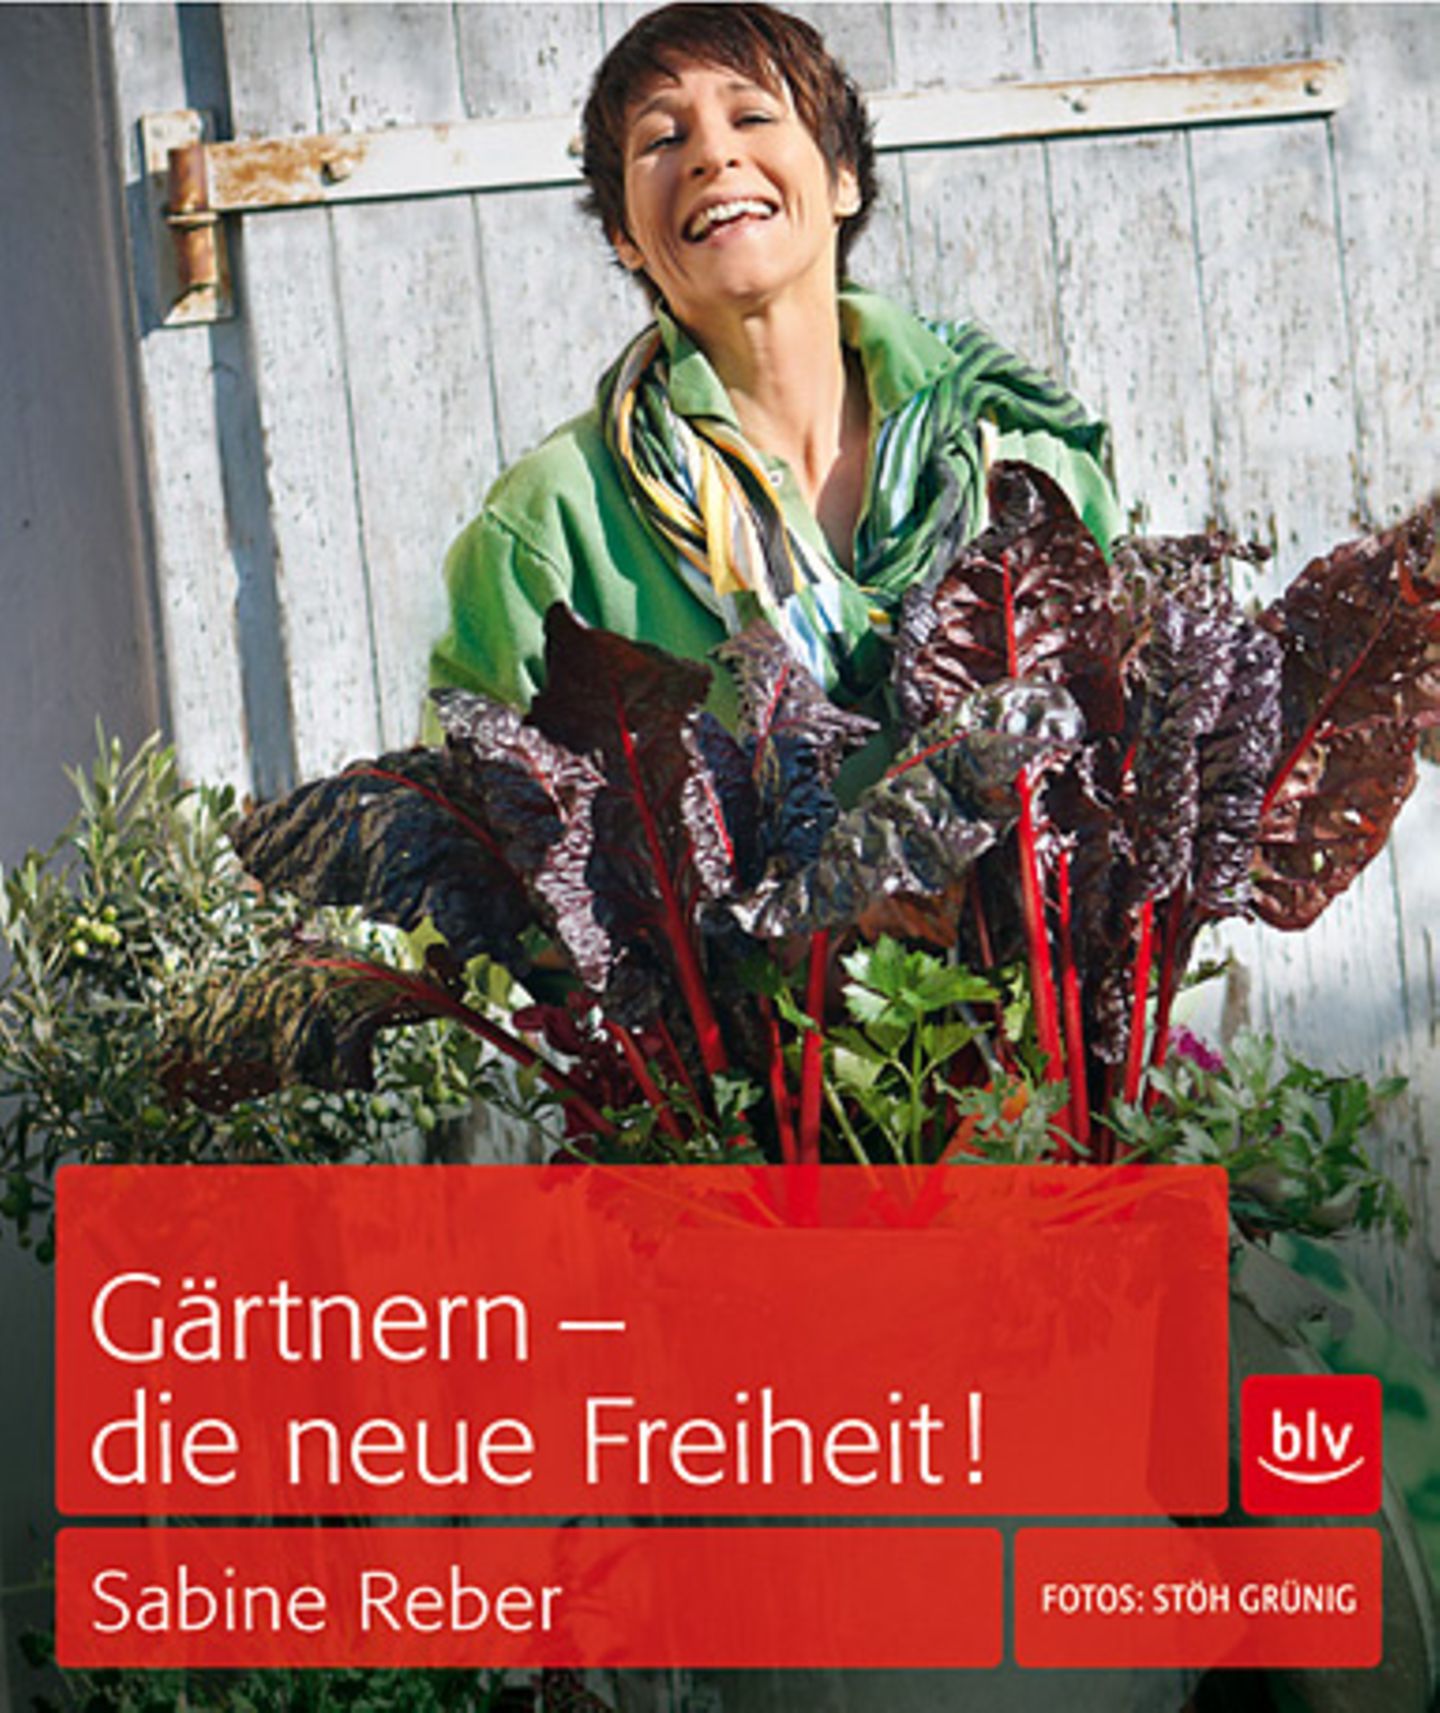 Für Gartenrebellen: "Gärtnern - die neue Freiheit" von Sabine Reber